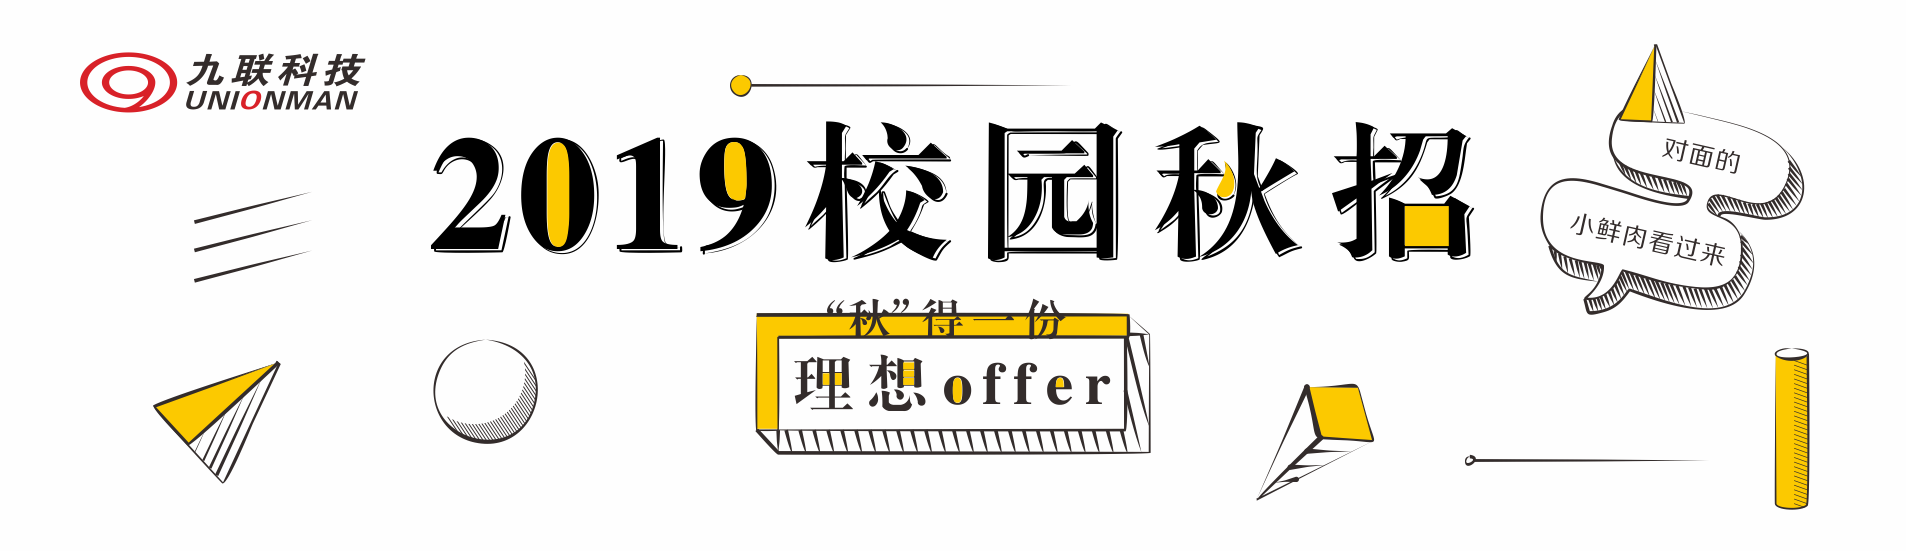 九联 UNIONOMAN logo